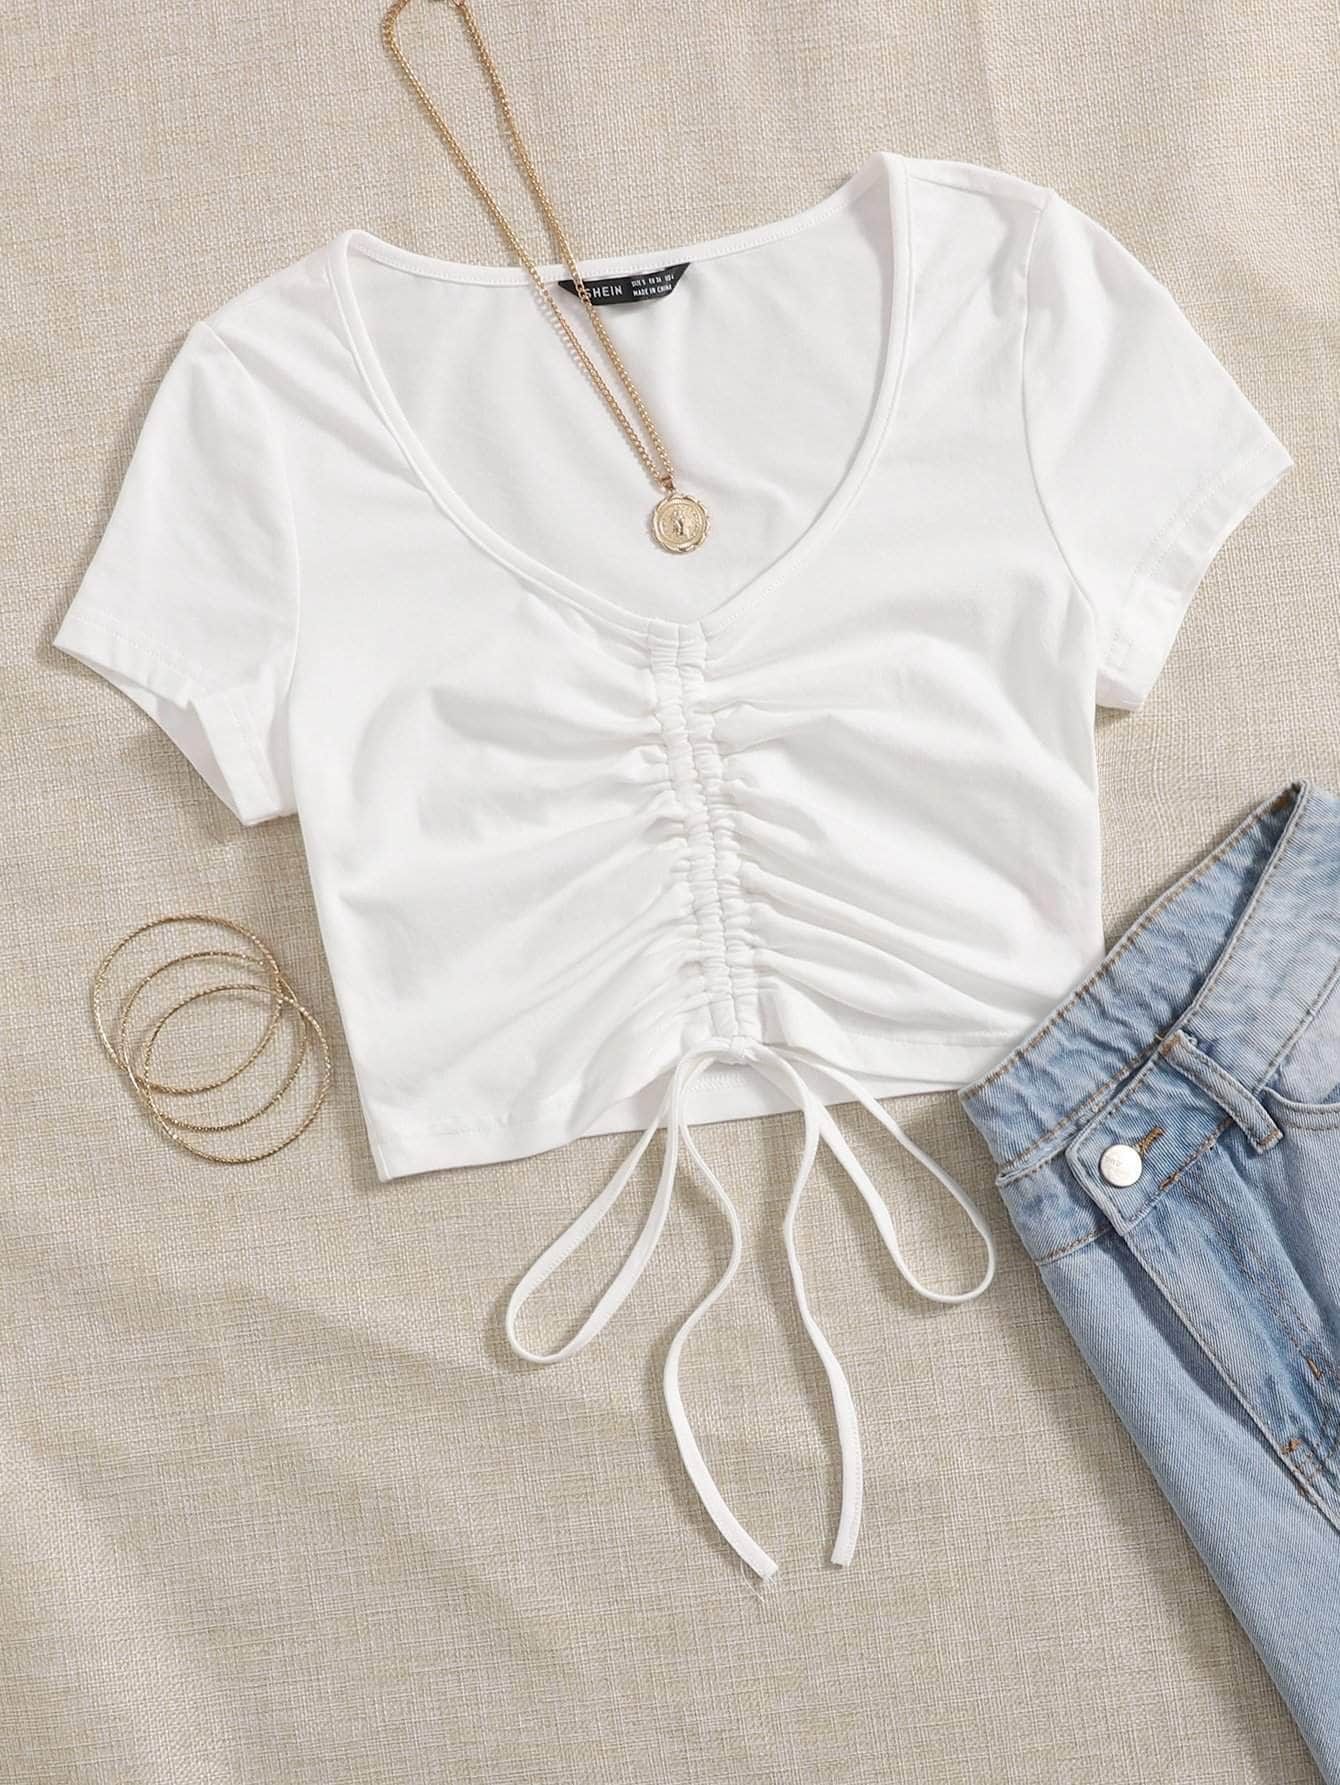 Blanco / XS Camiseta con fruncido con cordón unicolor